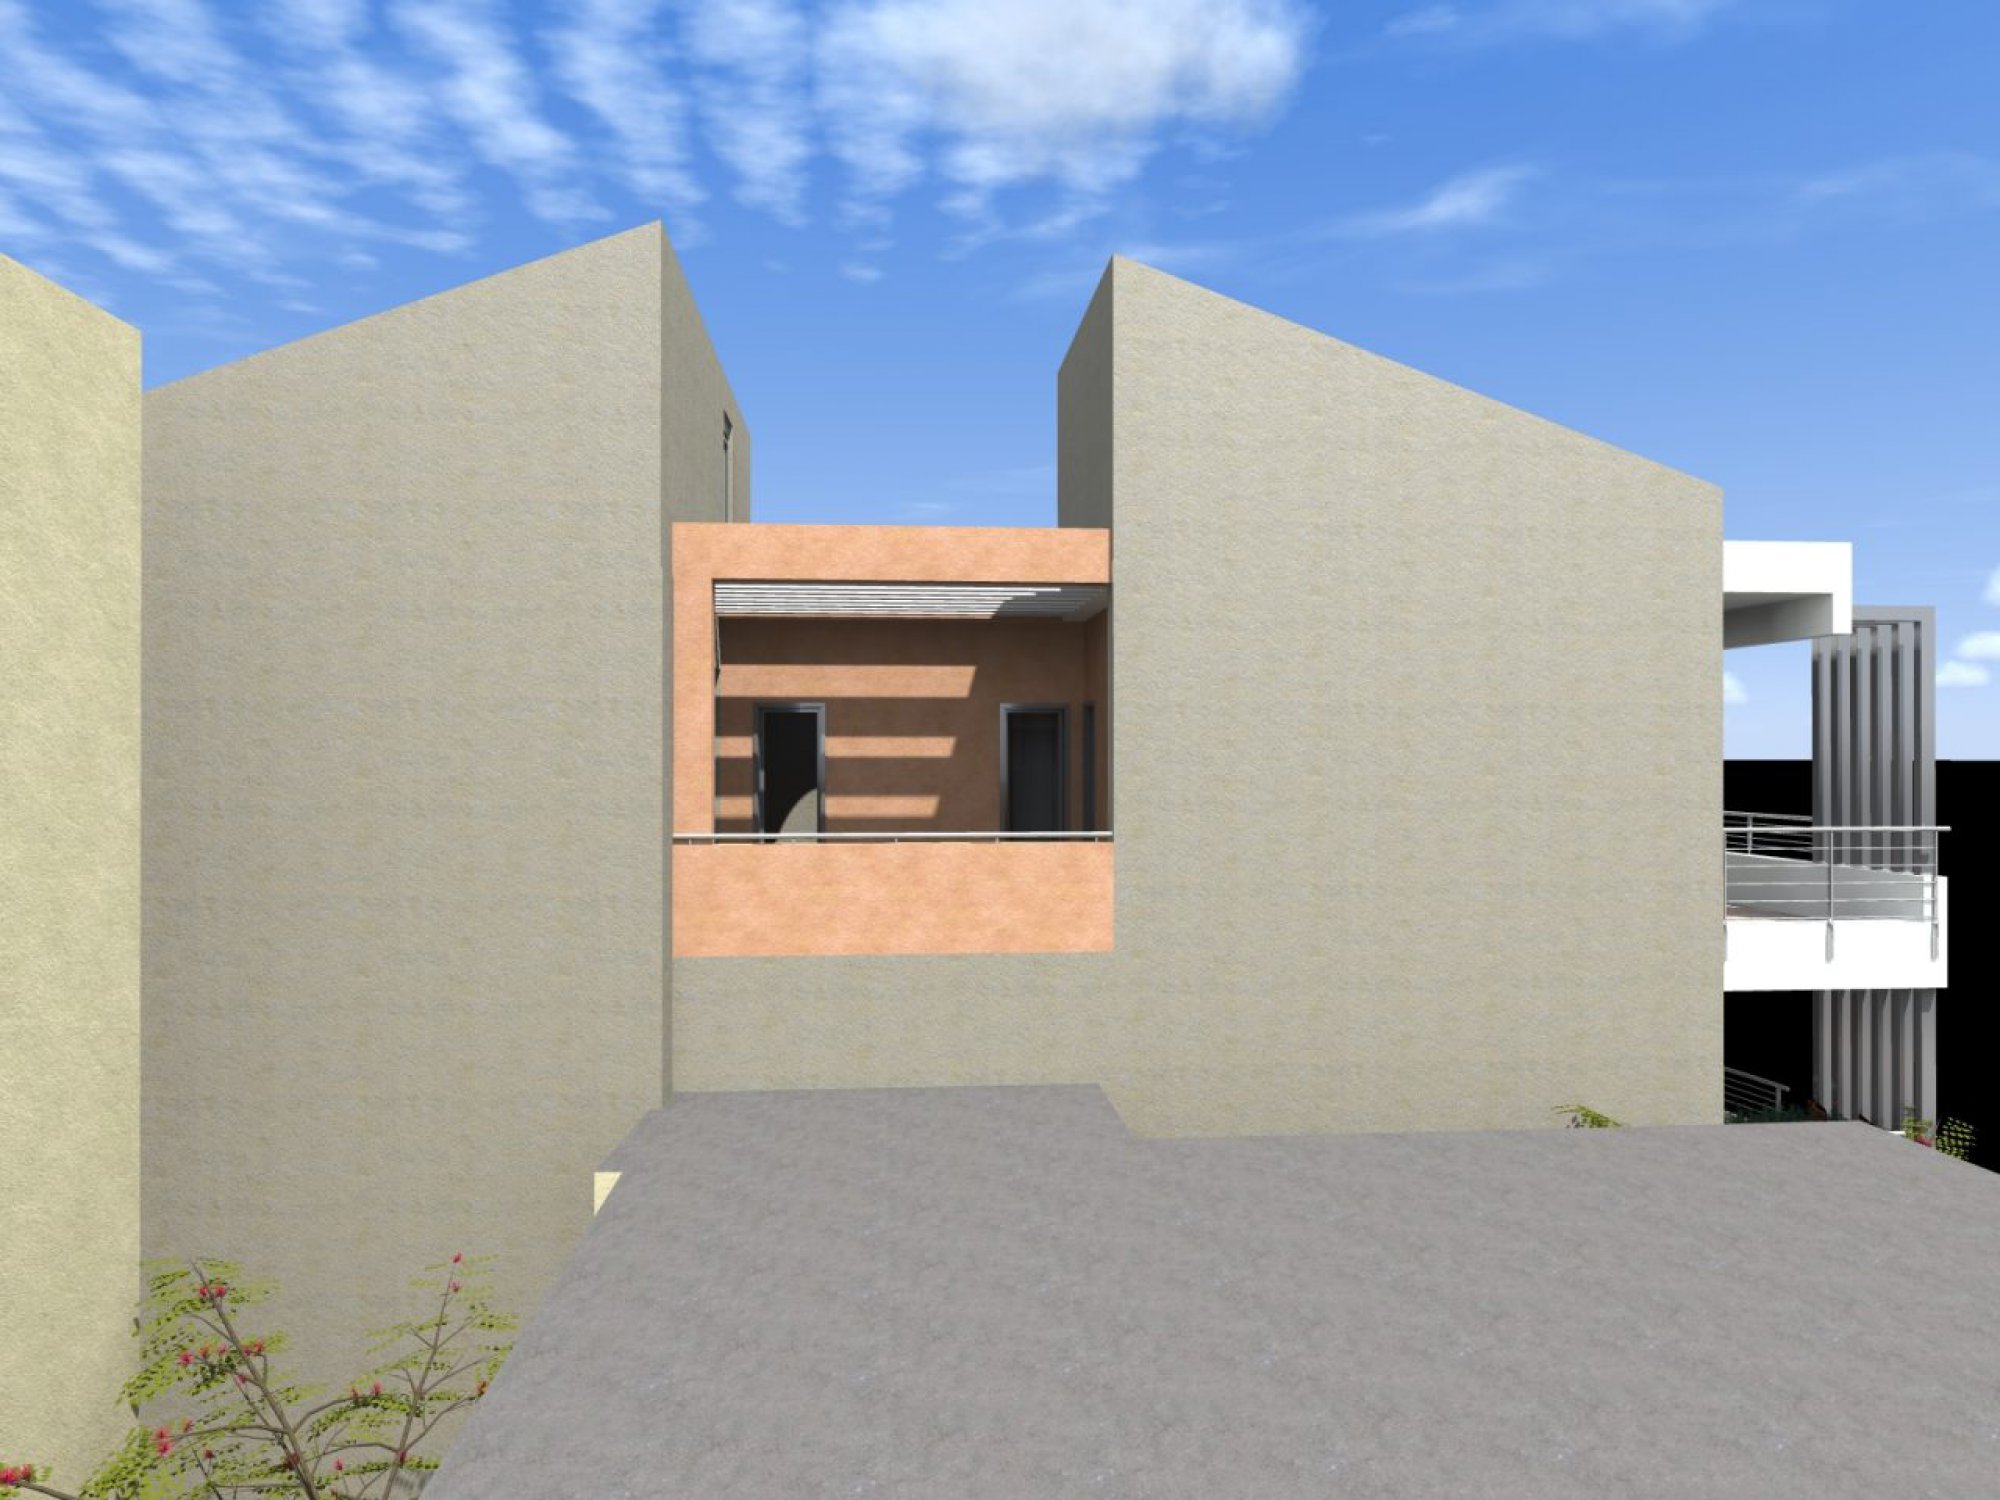 Μελέτη διώροφου κτιρίου κατοικιών στην περιοχή Κιάφα Ιωαννίνων